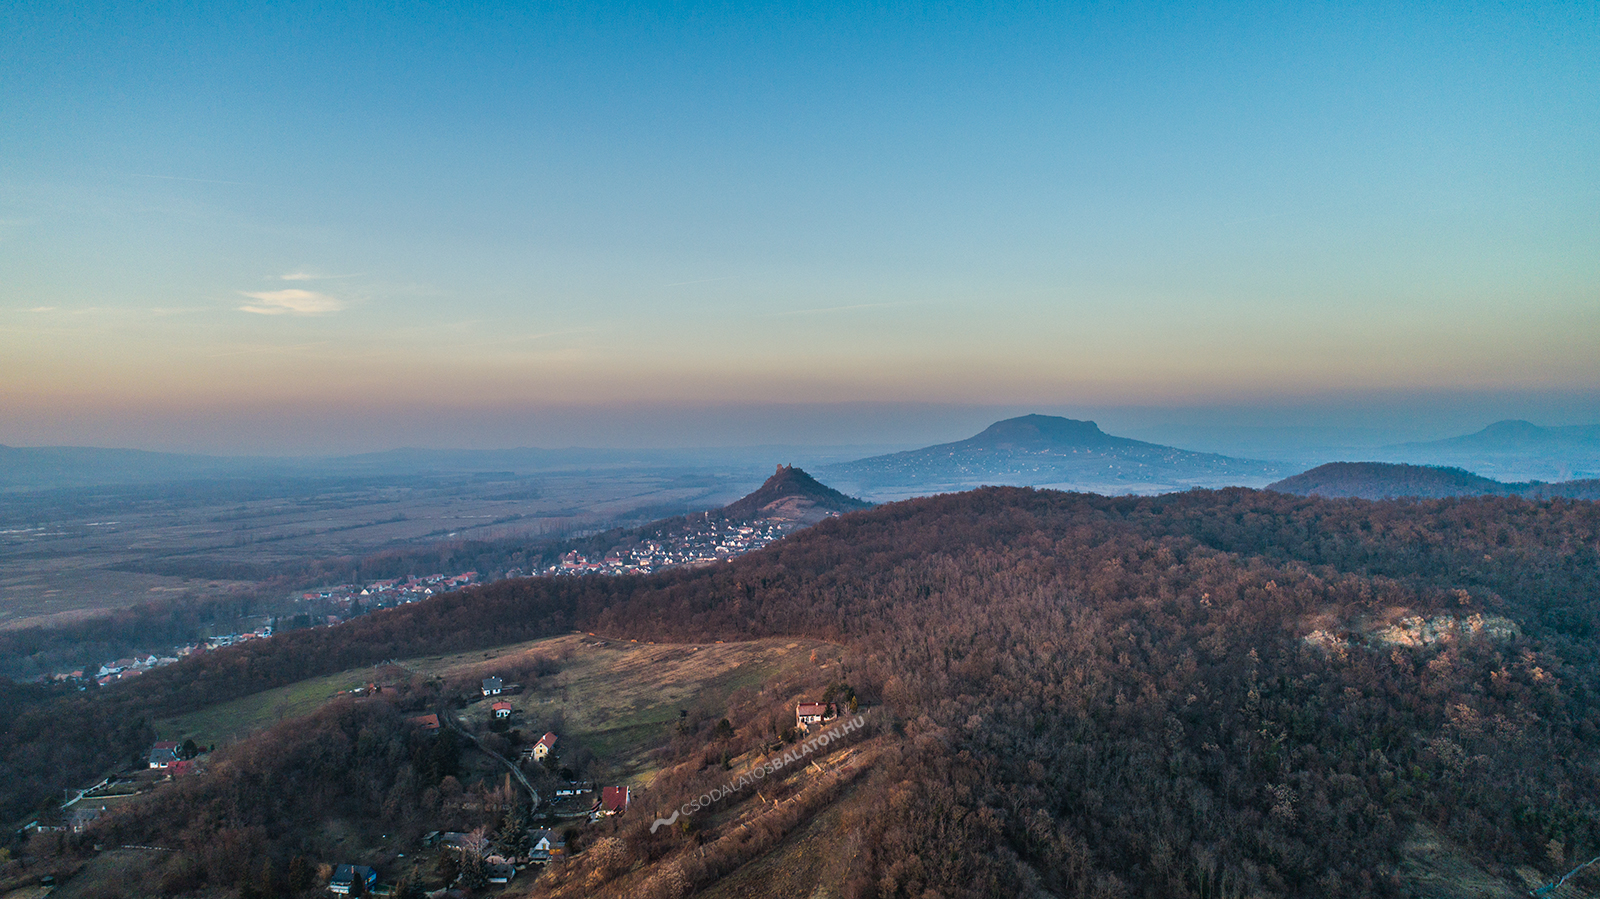 Der Óvár-Aussichtsturm und die Burgruine in Szigliget bei Sonnenuntergang